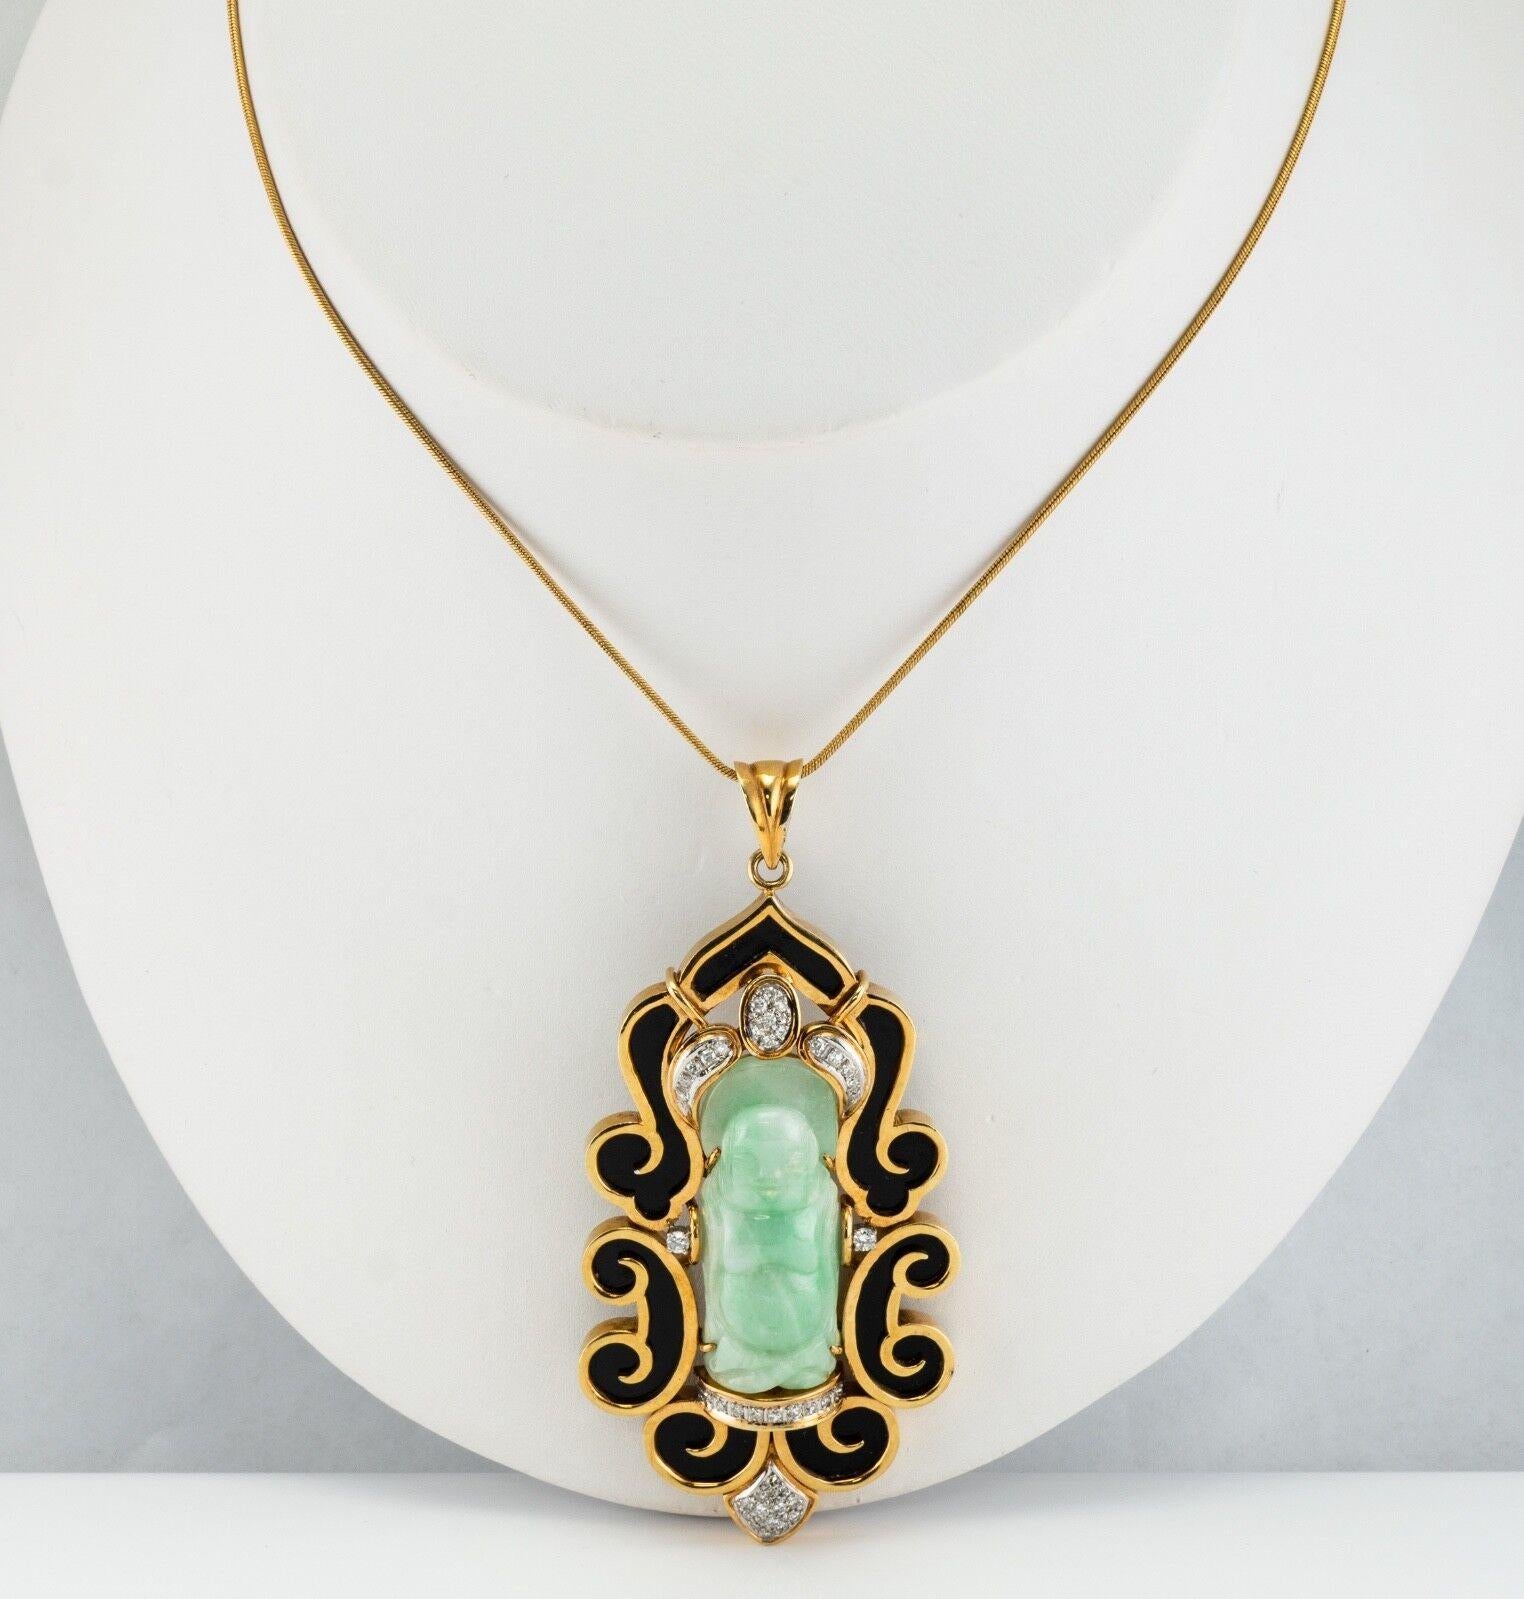 Ce pendentif unique en son genre est finement réalisé en or massif 14 carats et serti d'un véritable jade sculpté, de diamants et d'onyx noir. Le Bouddha sculpté mesure 1-5/16